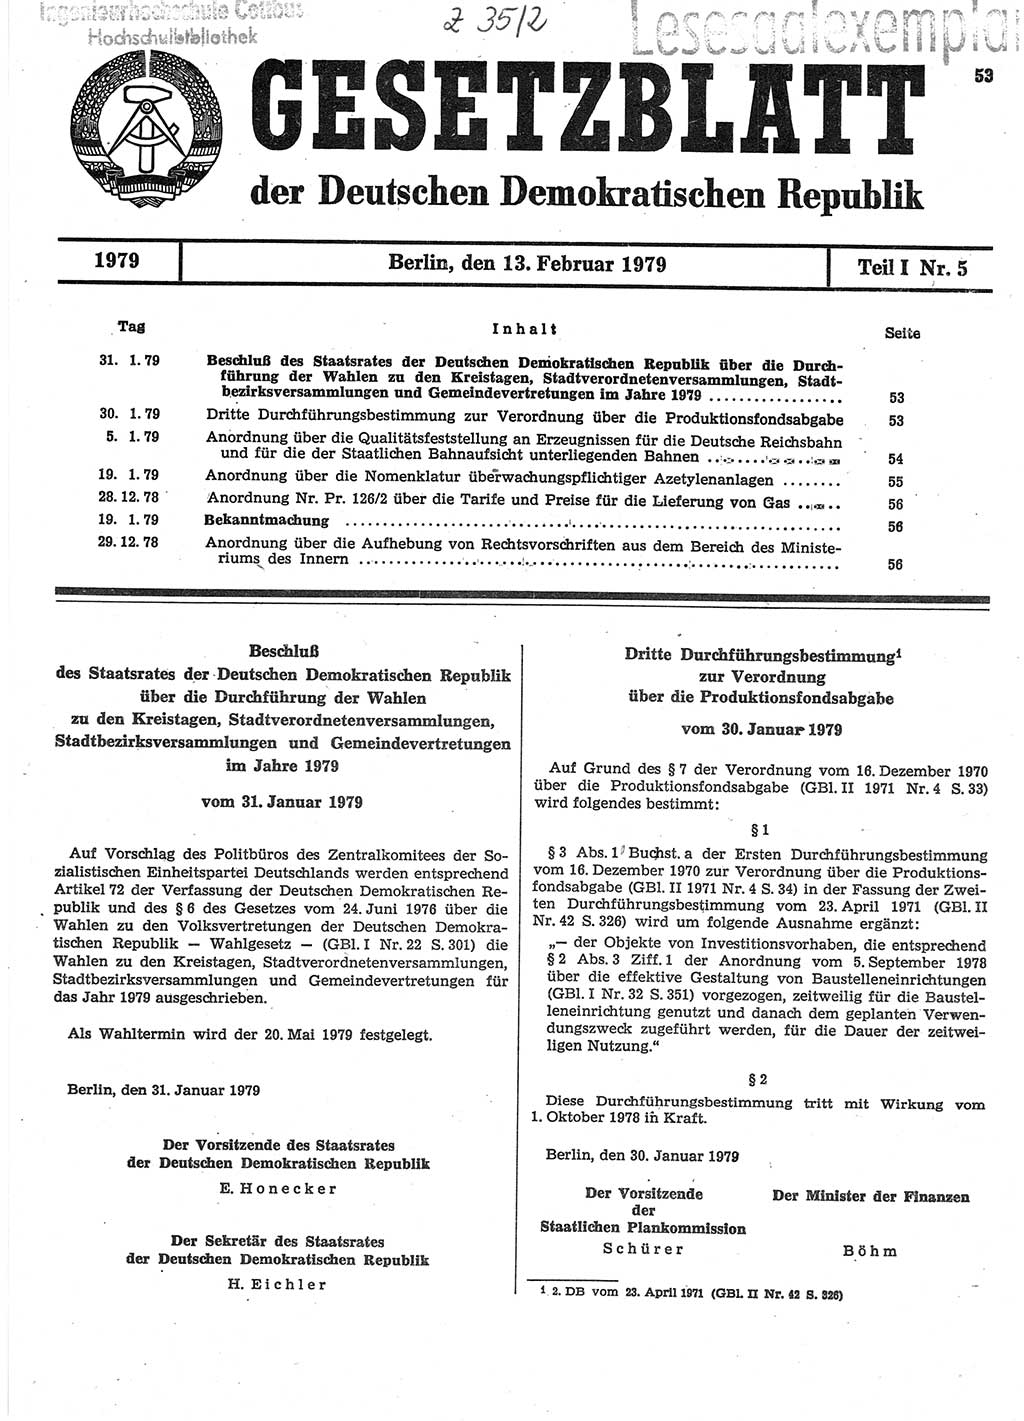 Gesetzblatt (GBl.) der Deutschen Demokratischen Republik (DDR) Teil Ⅰ 1979, Seite 53 (GBl. DDR Ⅰ 1979, S. 53)